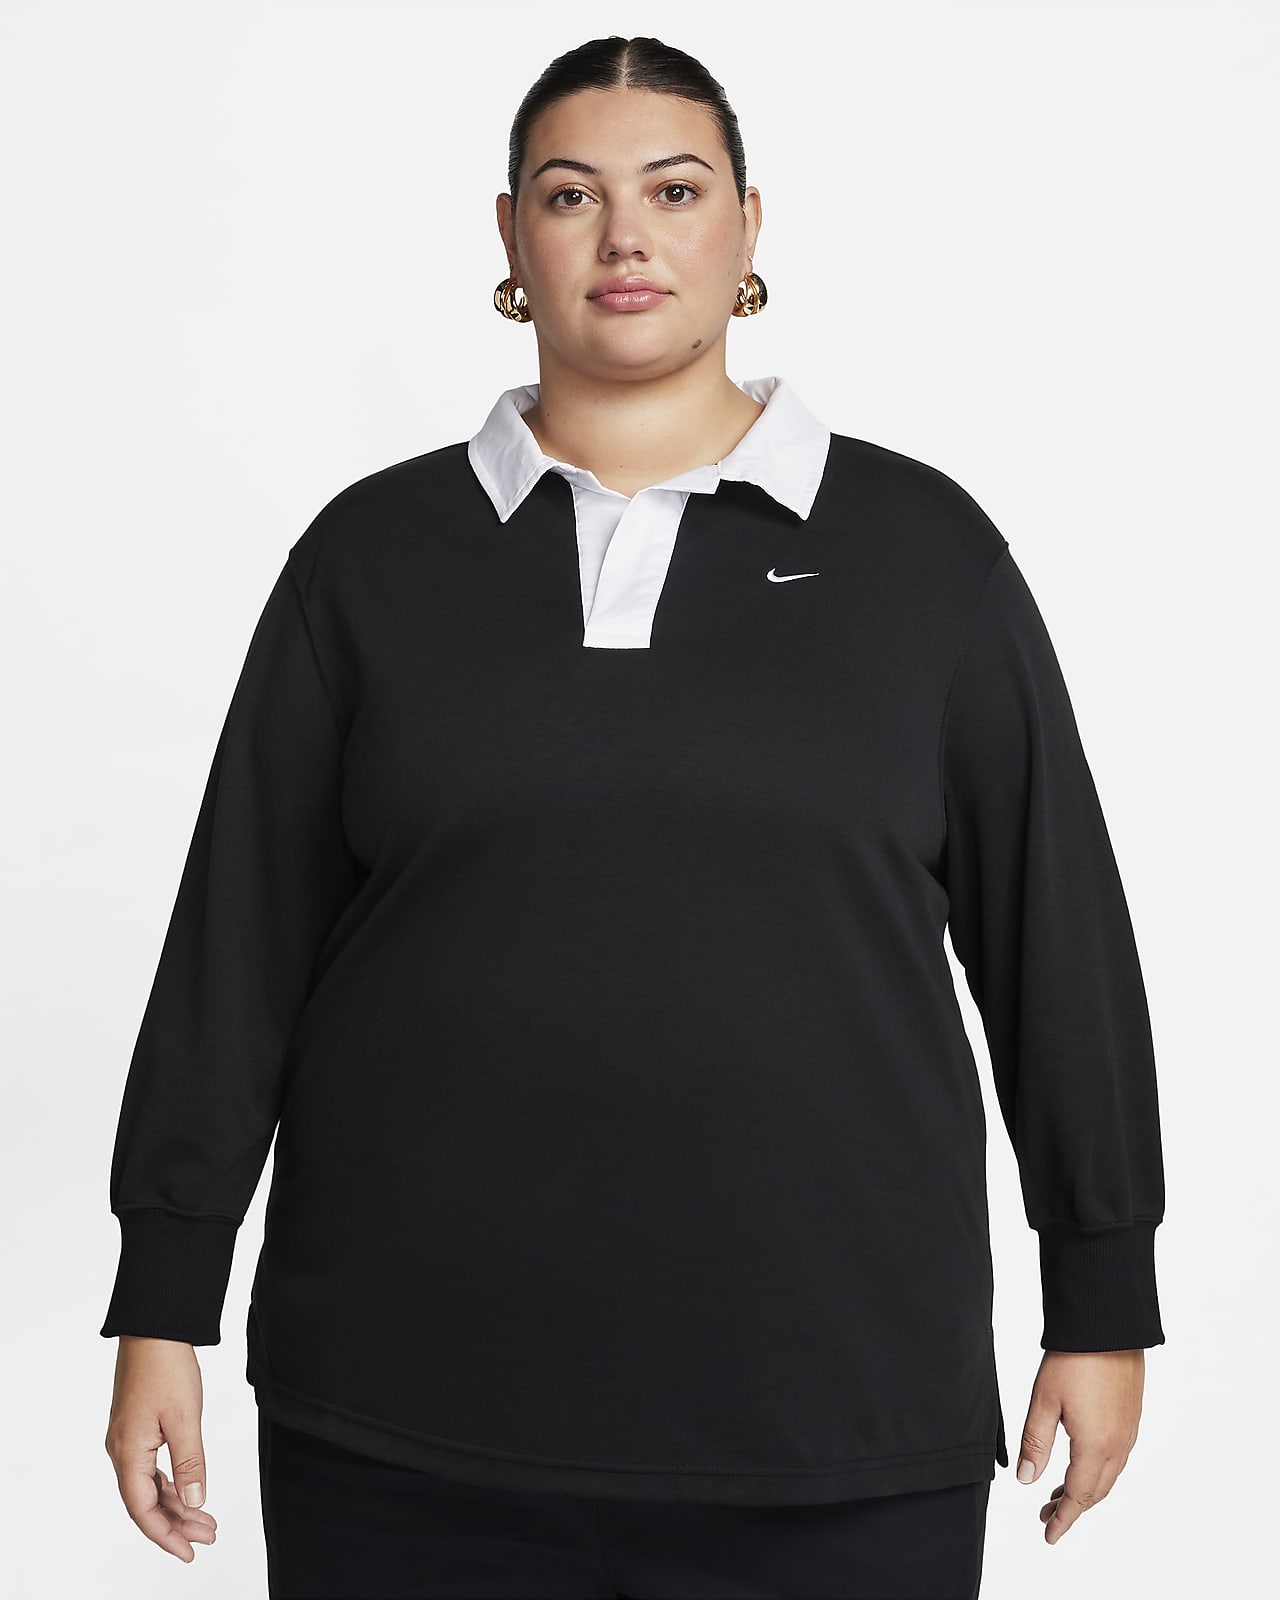 Dámská volnější polokošile Nike Sportswear Essential s dlouhým rukávem (větší velikost)